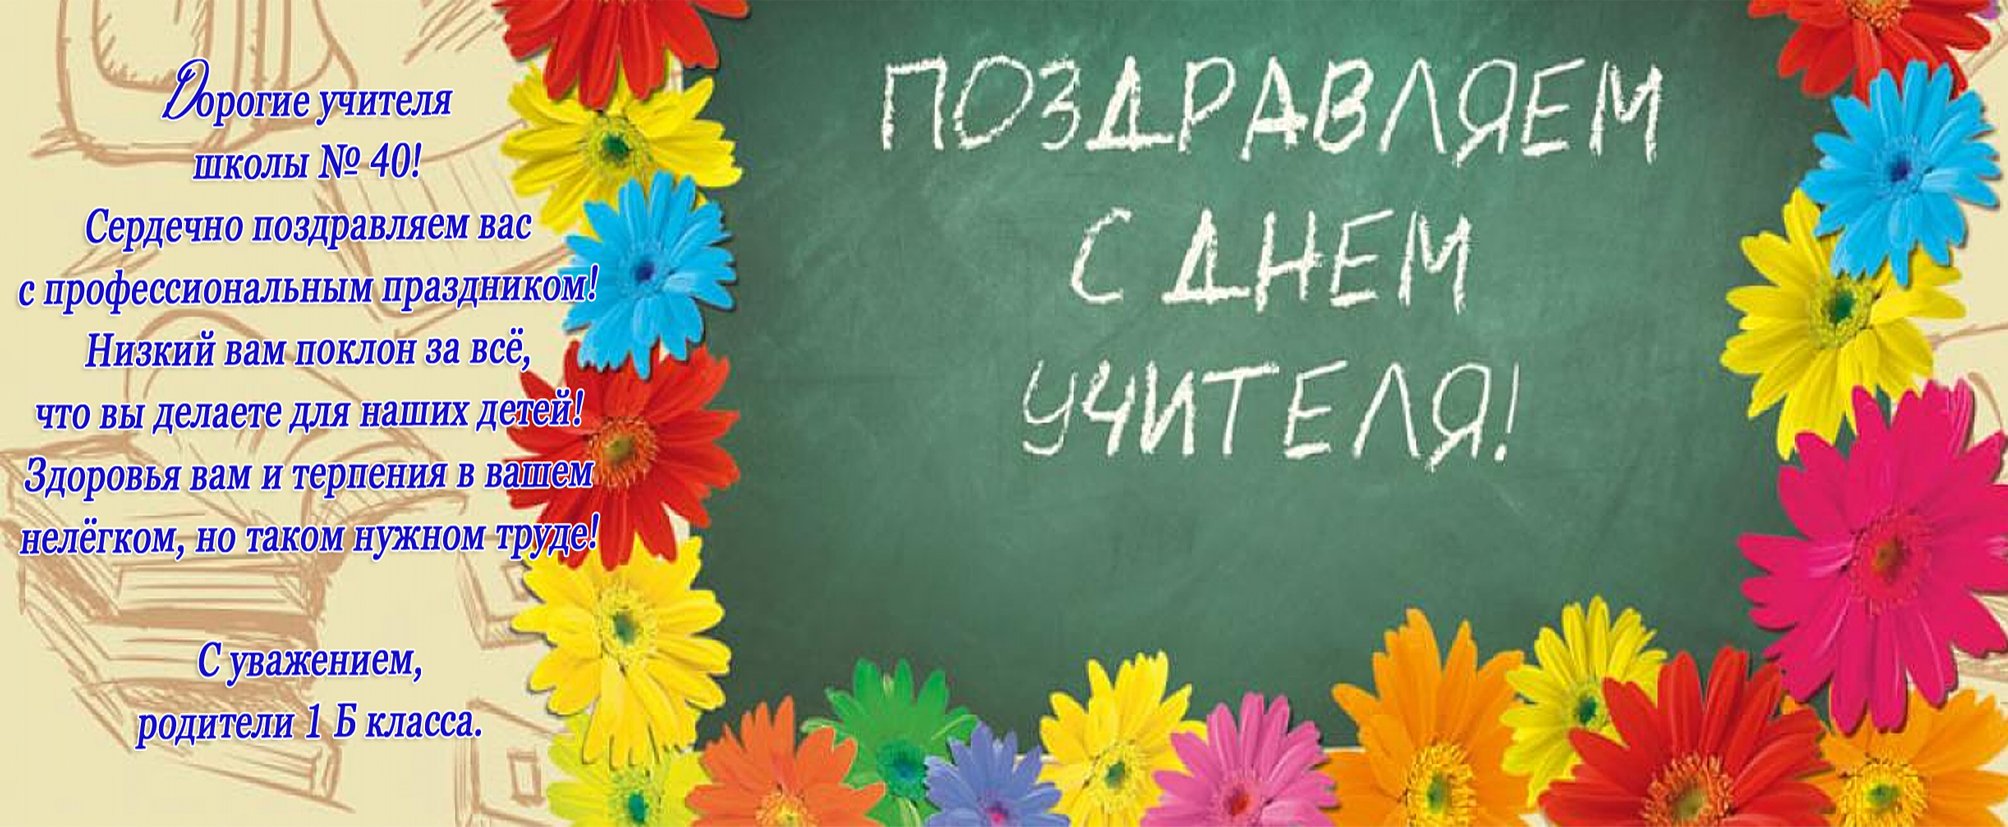 Фото Поздравление учителю казахского языка #25